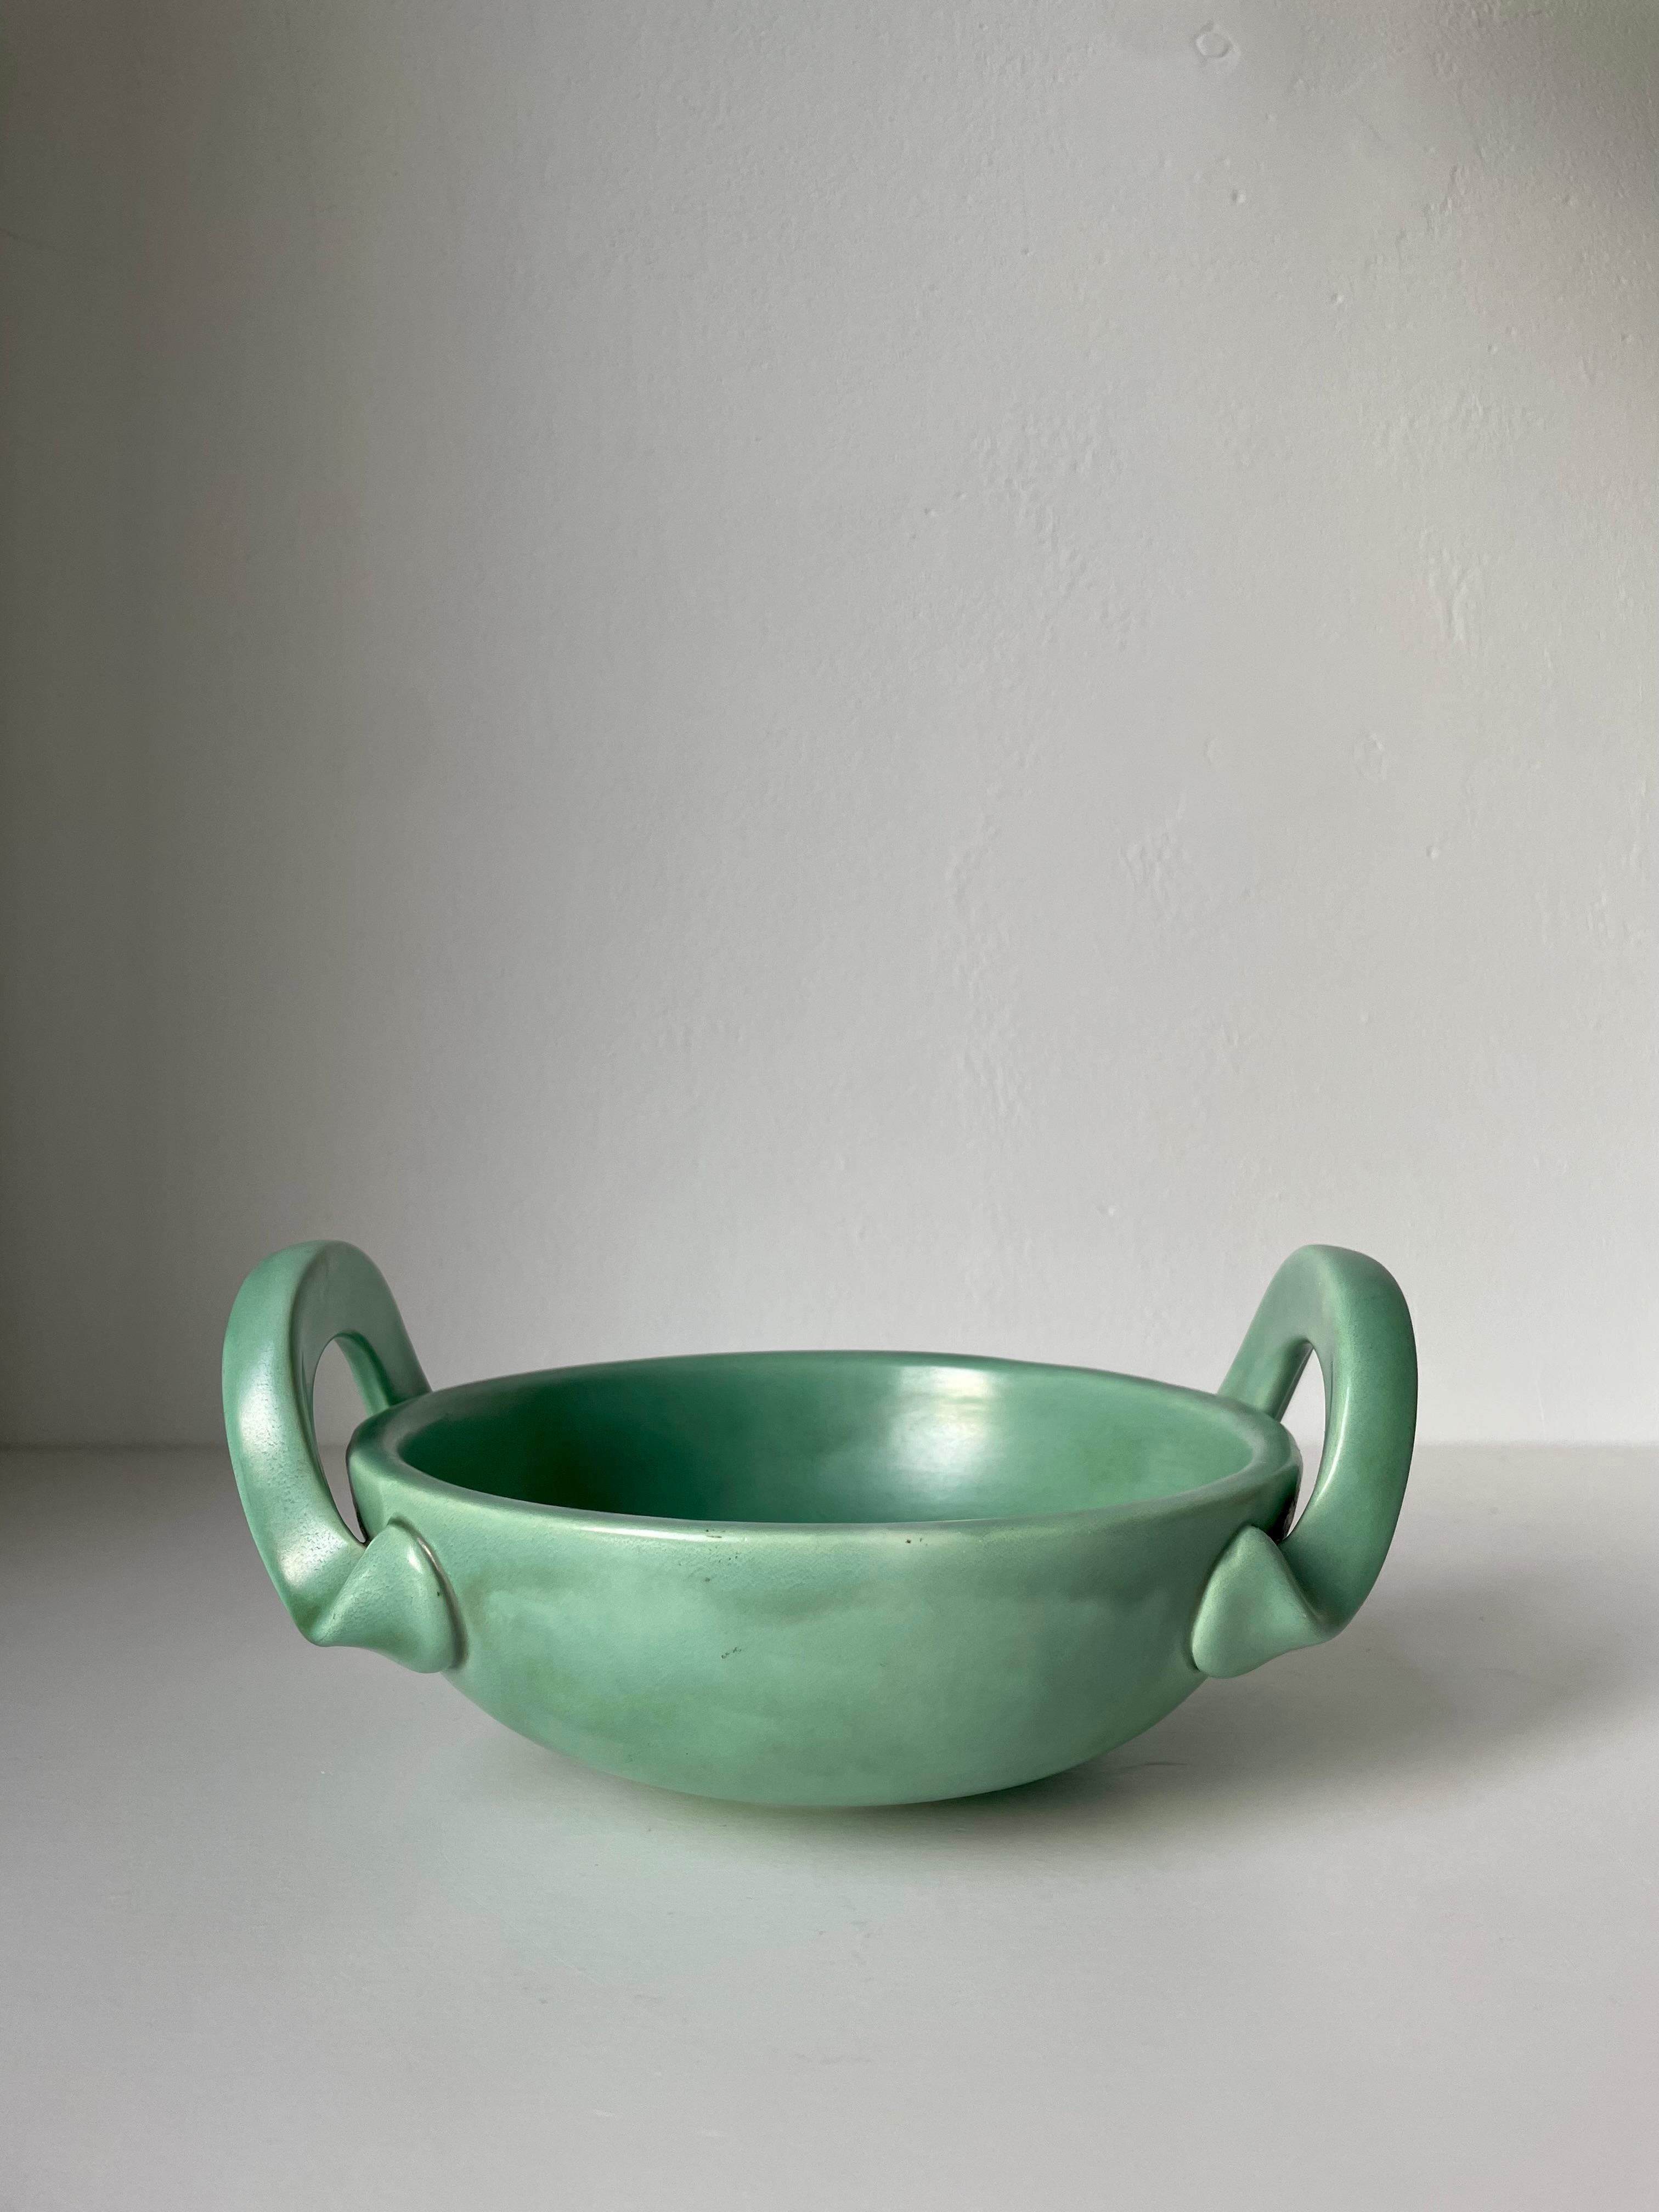 Ceramic Arthur Percy 1940s Celadon Green Art Nouveau Handle Bowl, Sweden For Sale